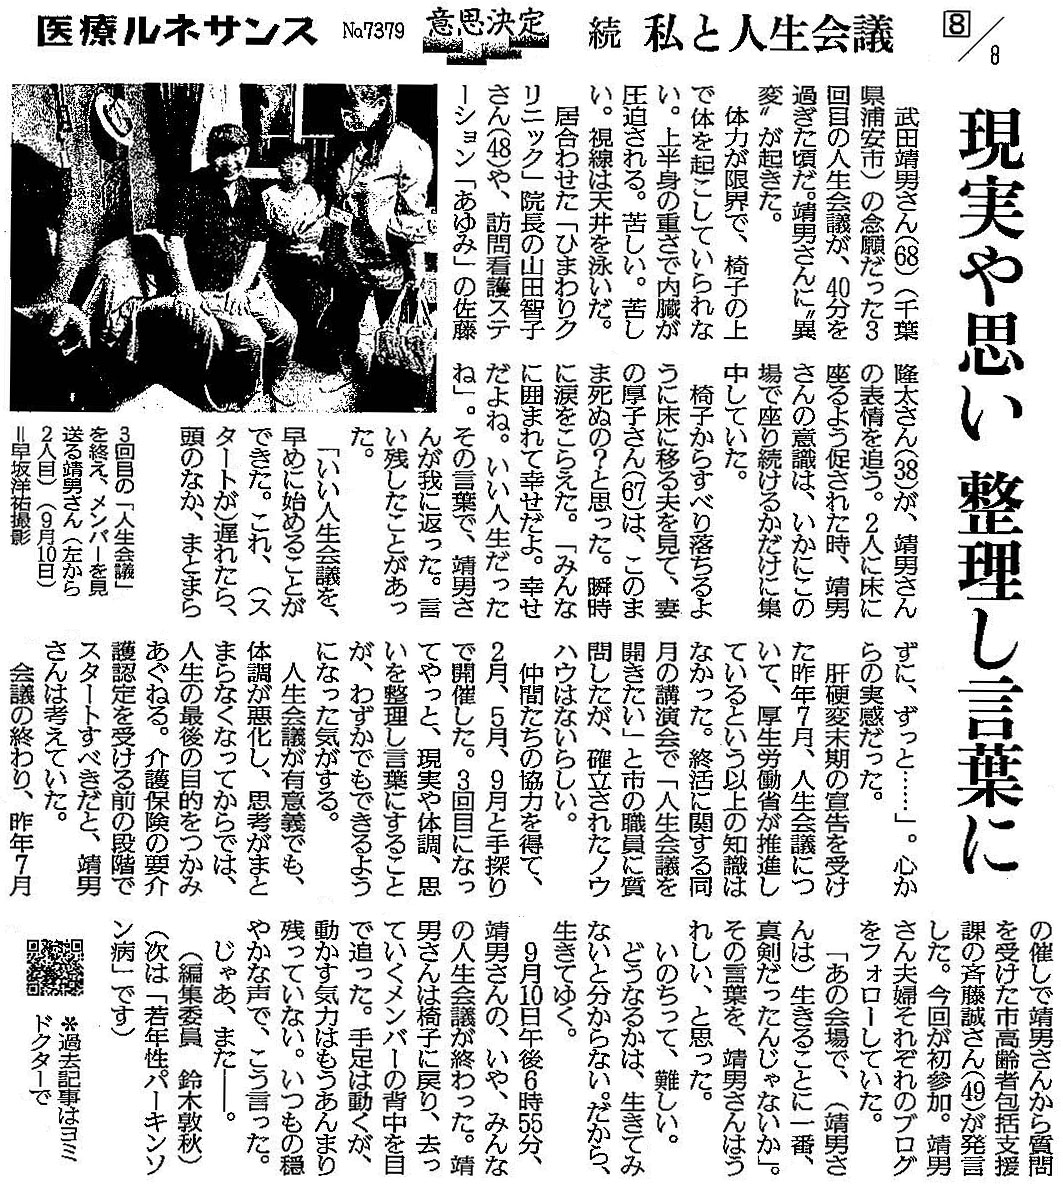 読売新聞 2020年10月2日掲載記事